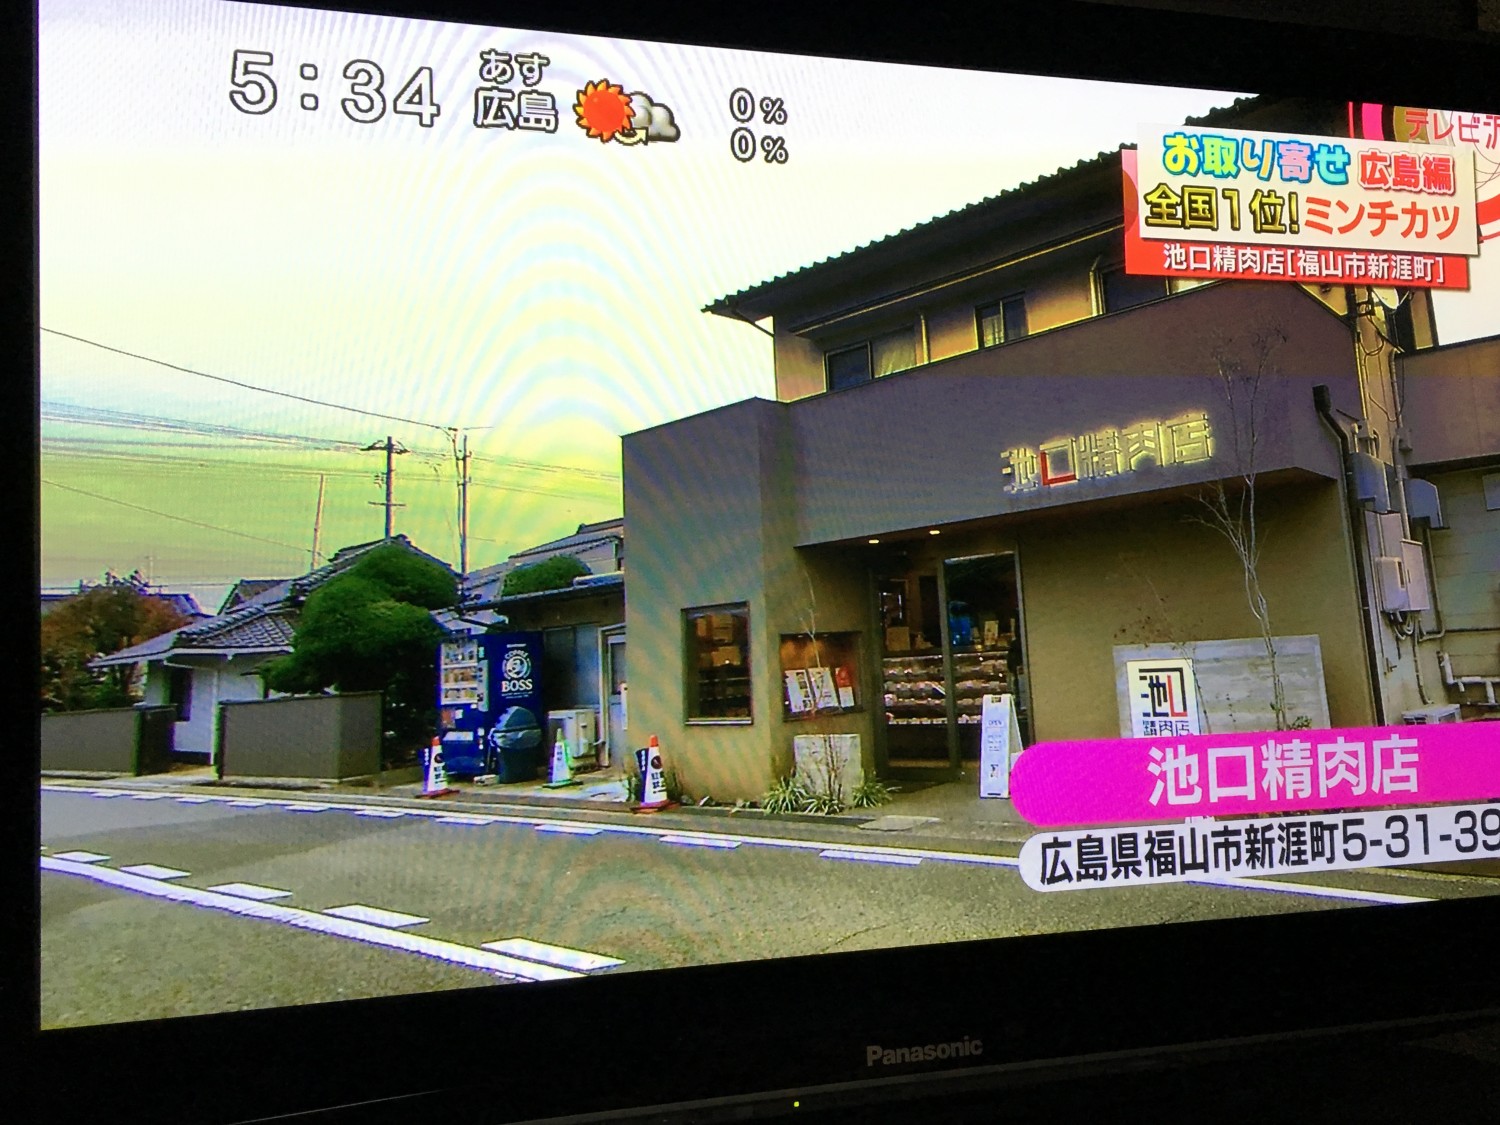 テレビ派放送分 (7)